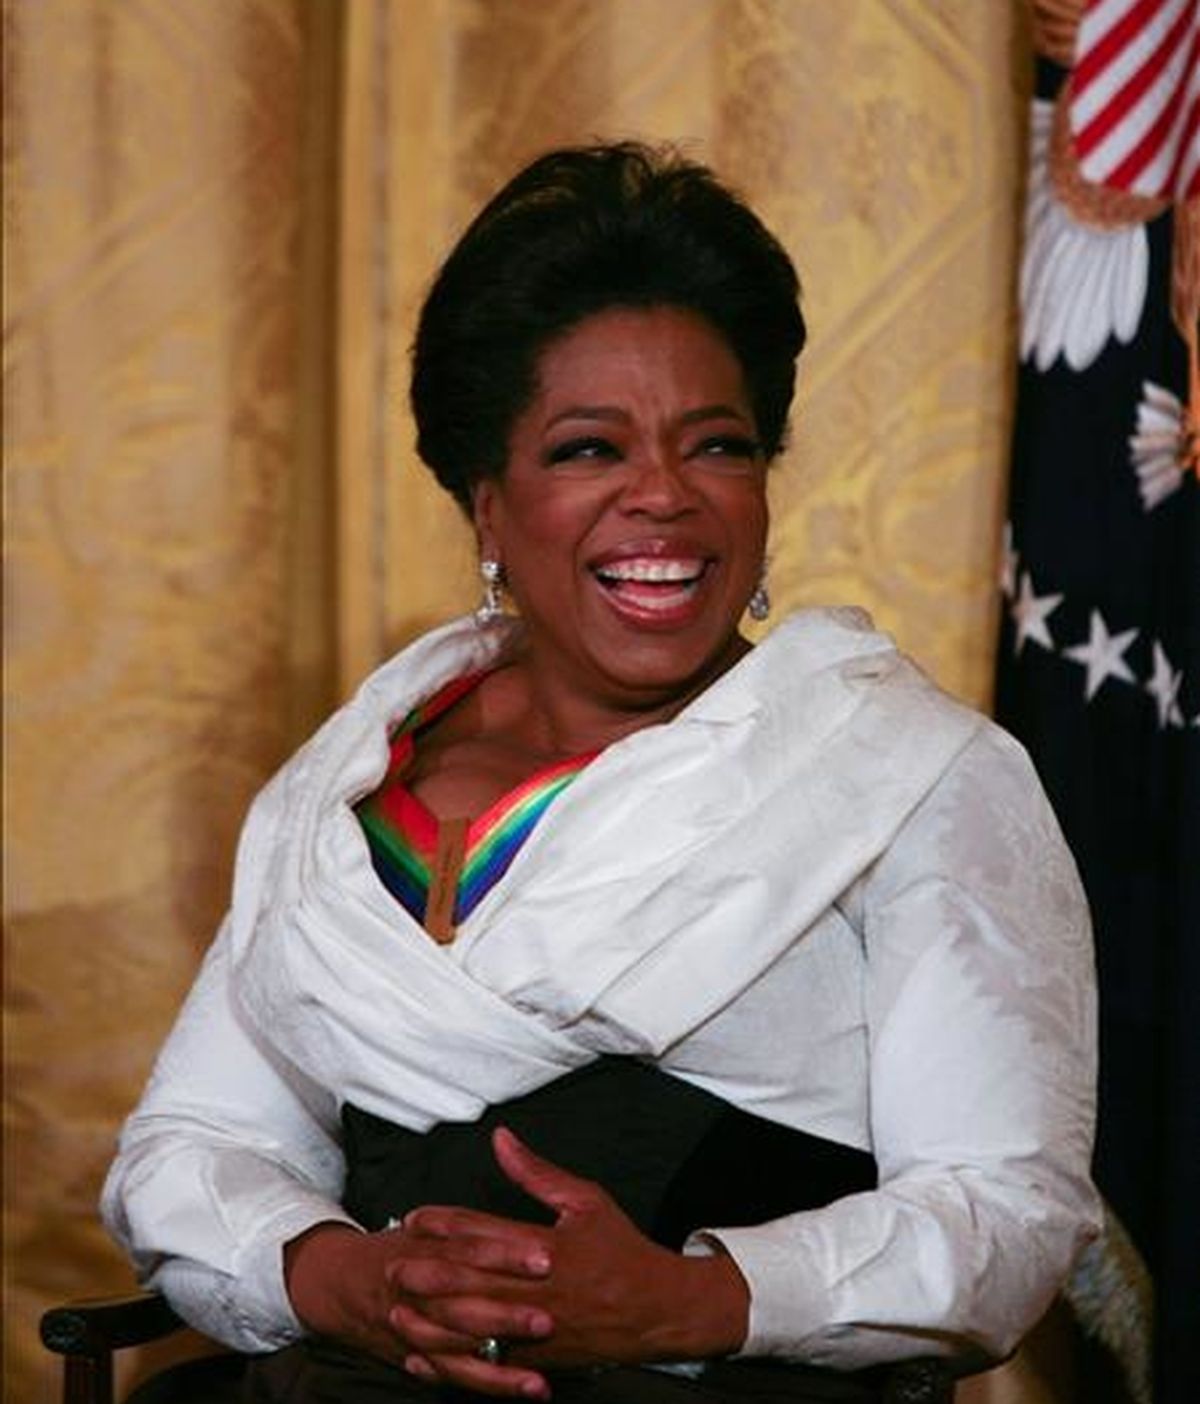 Oprah Winfrey realizó las contribuciones económicas para financiar proyectos educativos y sociales para mujeres y niños a través de la Oprah Winfrey Foundation, organización filantrópica creada por ella misma. EFE/Archivo